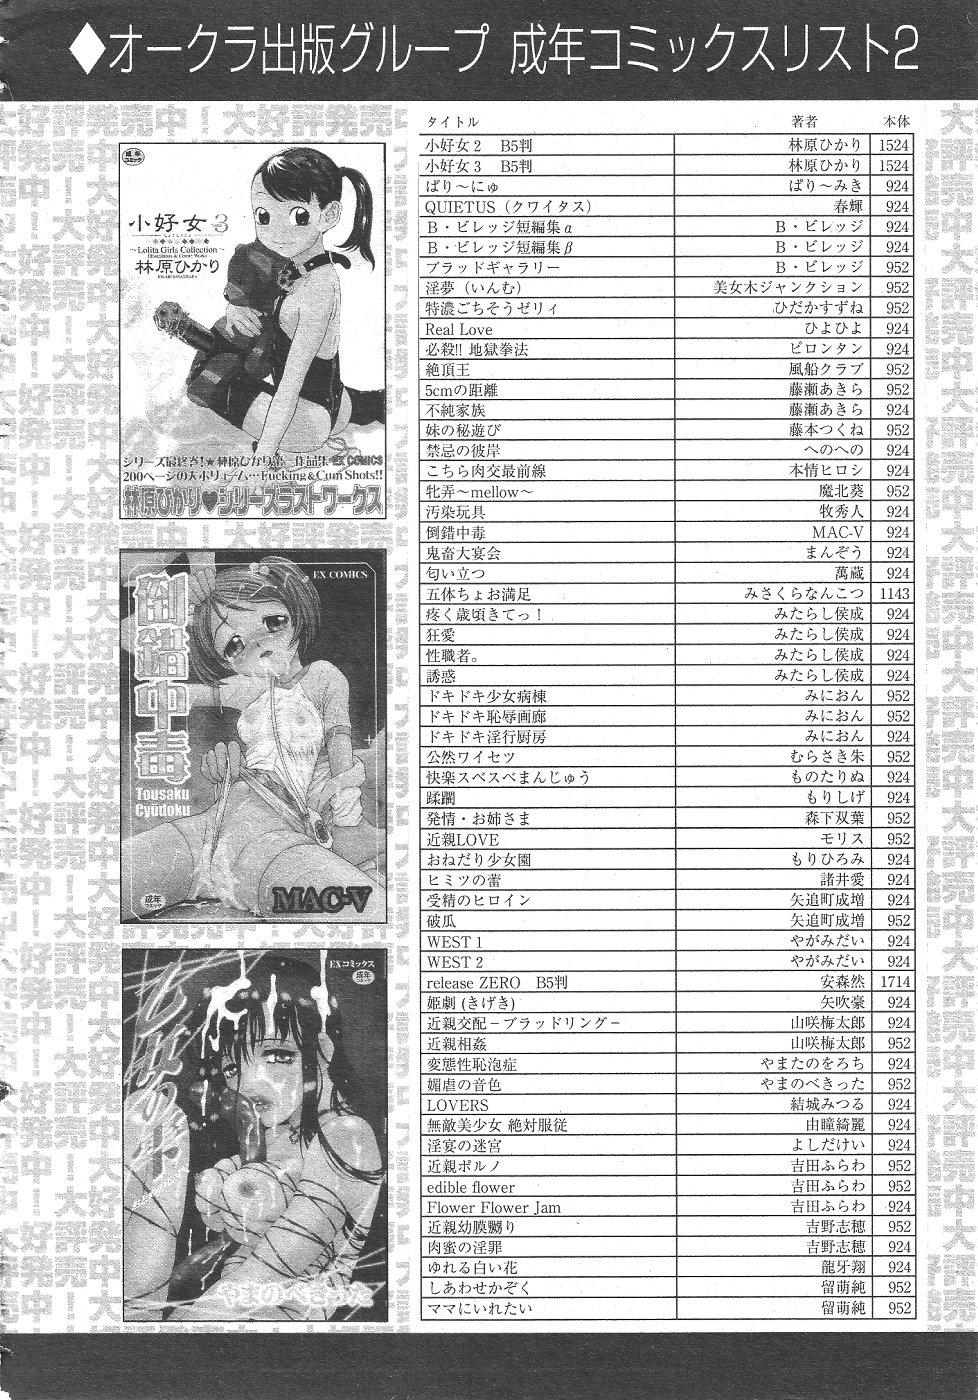 Gekkan Comic Muga 2004-06 Vol.10 427